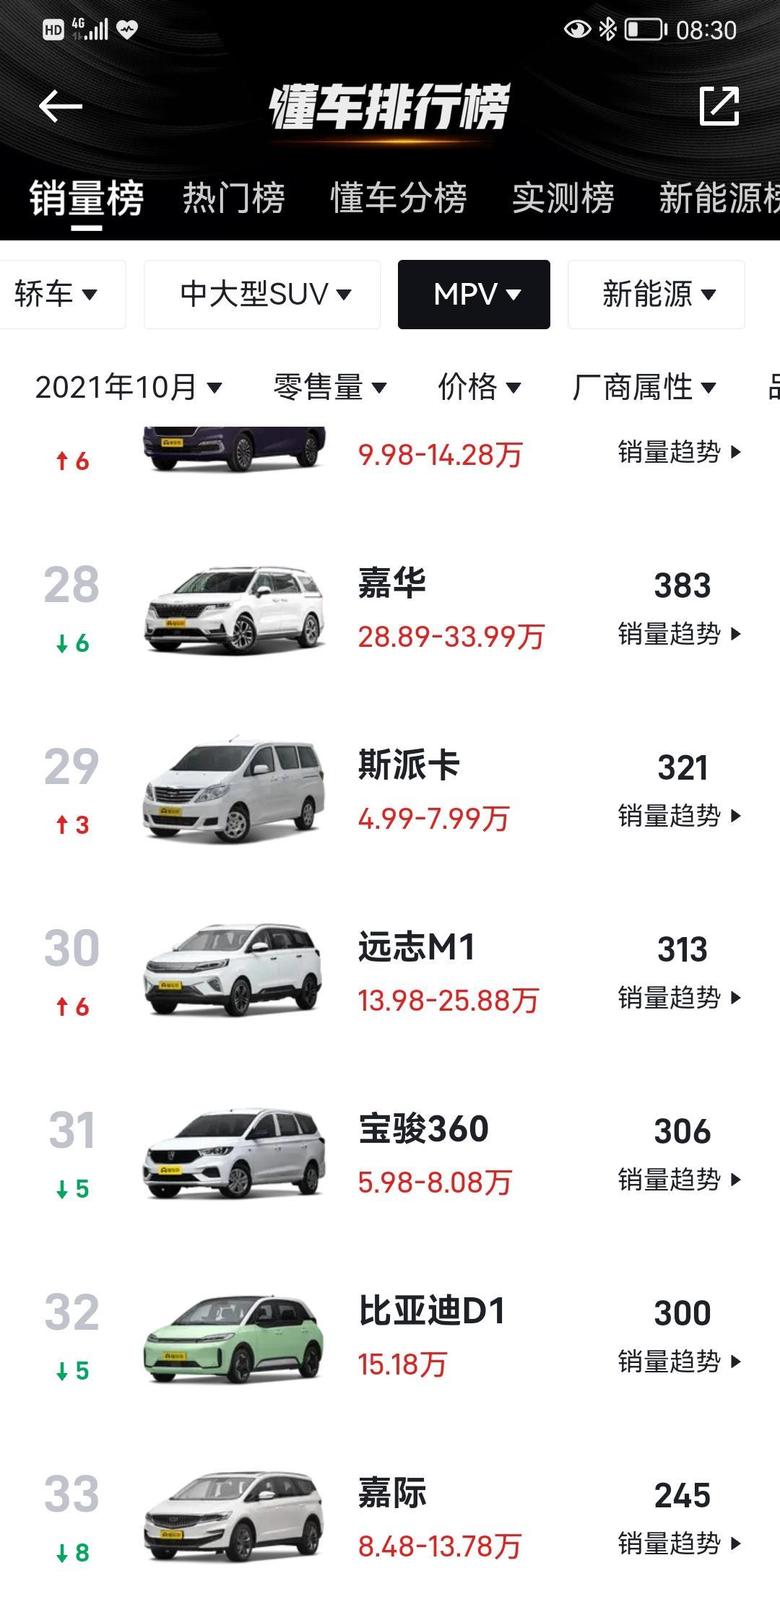 嘉华 销量持续走低。车是好车，价格不美丽。估计年后大降价了。甚至可能会起亚中国的把一把手换了，来提升起亚销量。目前起亚没有爆款车型，经销商日子惨不忍睹。等优惠6万吧。